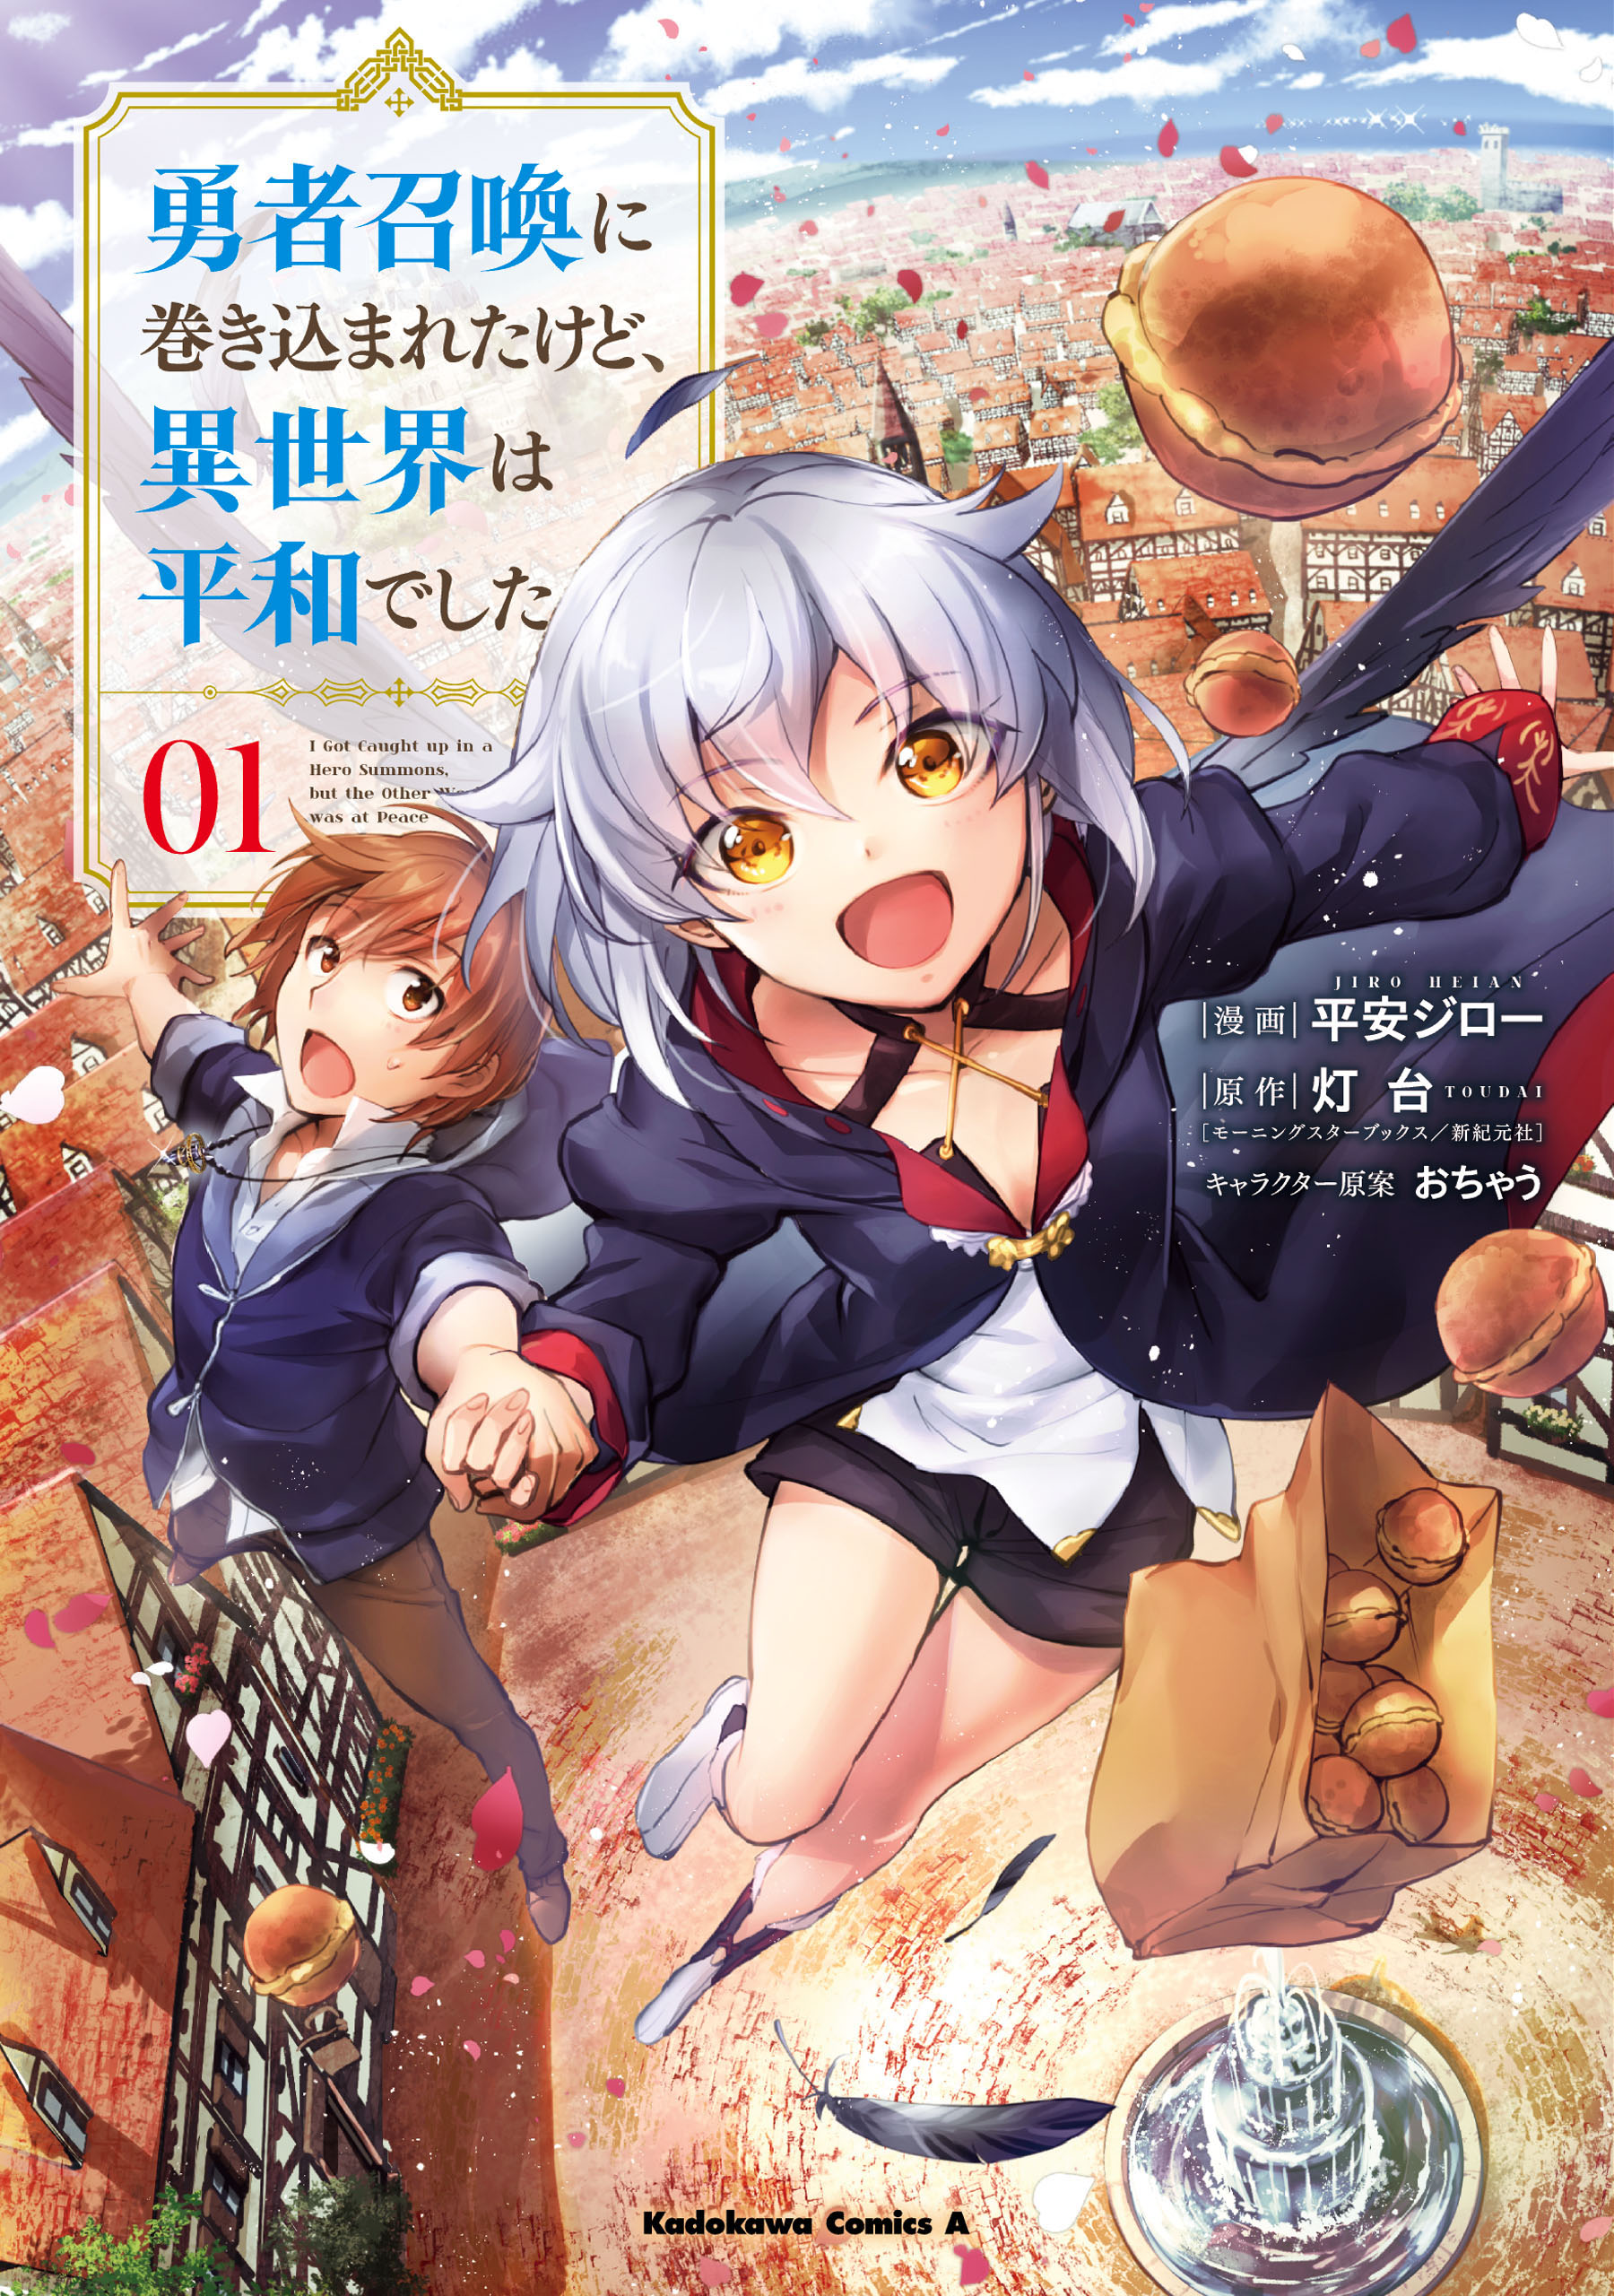 Manga Mogura RE on X: Yuusha shoukan ni makikomareta kedo isekai wa heiwa  deshita manga vol 4 by Toudai, Heian Jirou, Ochau   / X